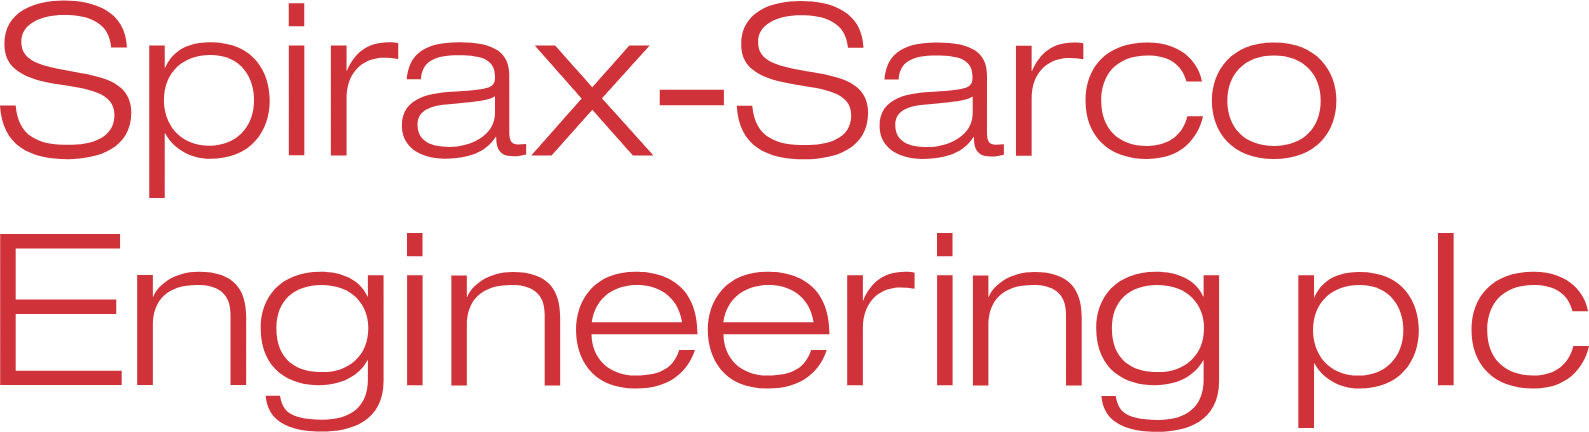 Spirax-Sarco Engineering logo large (transparent PNG)